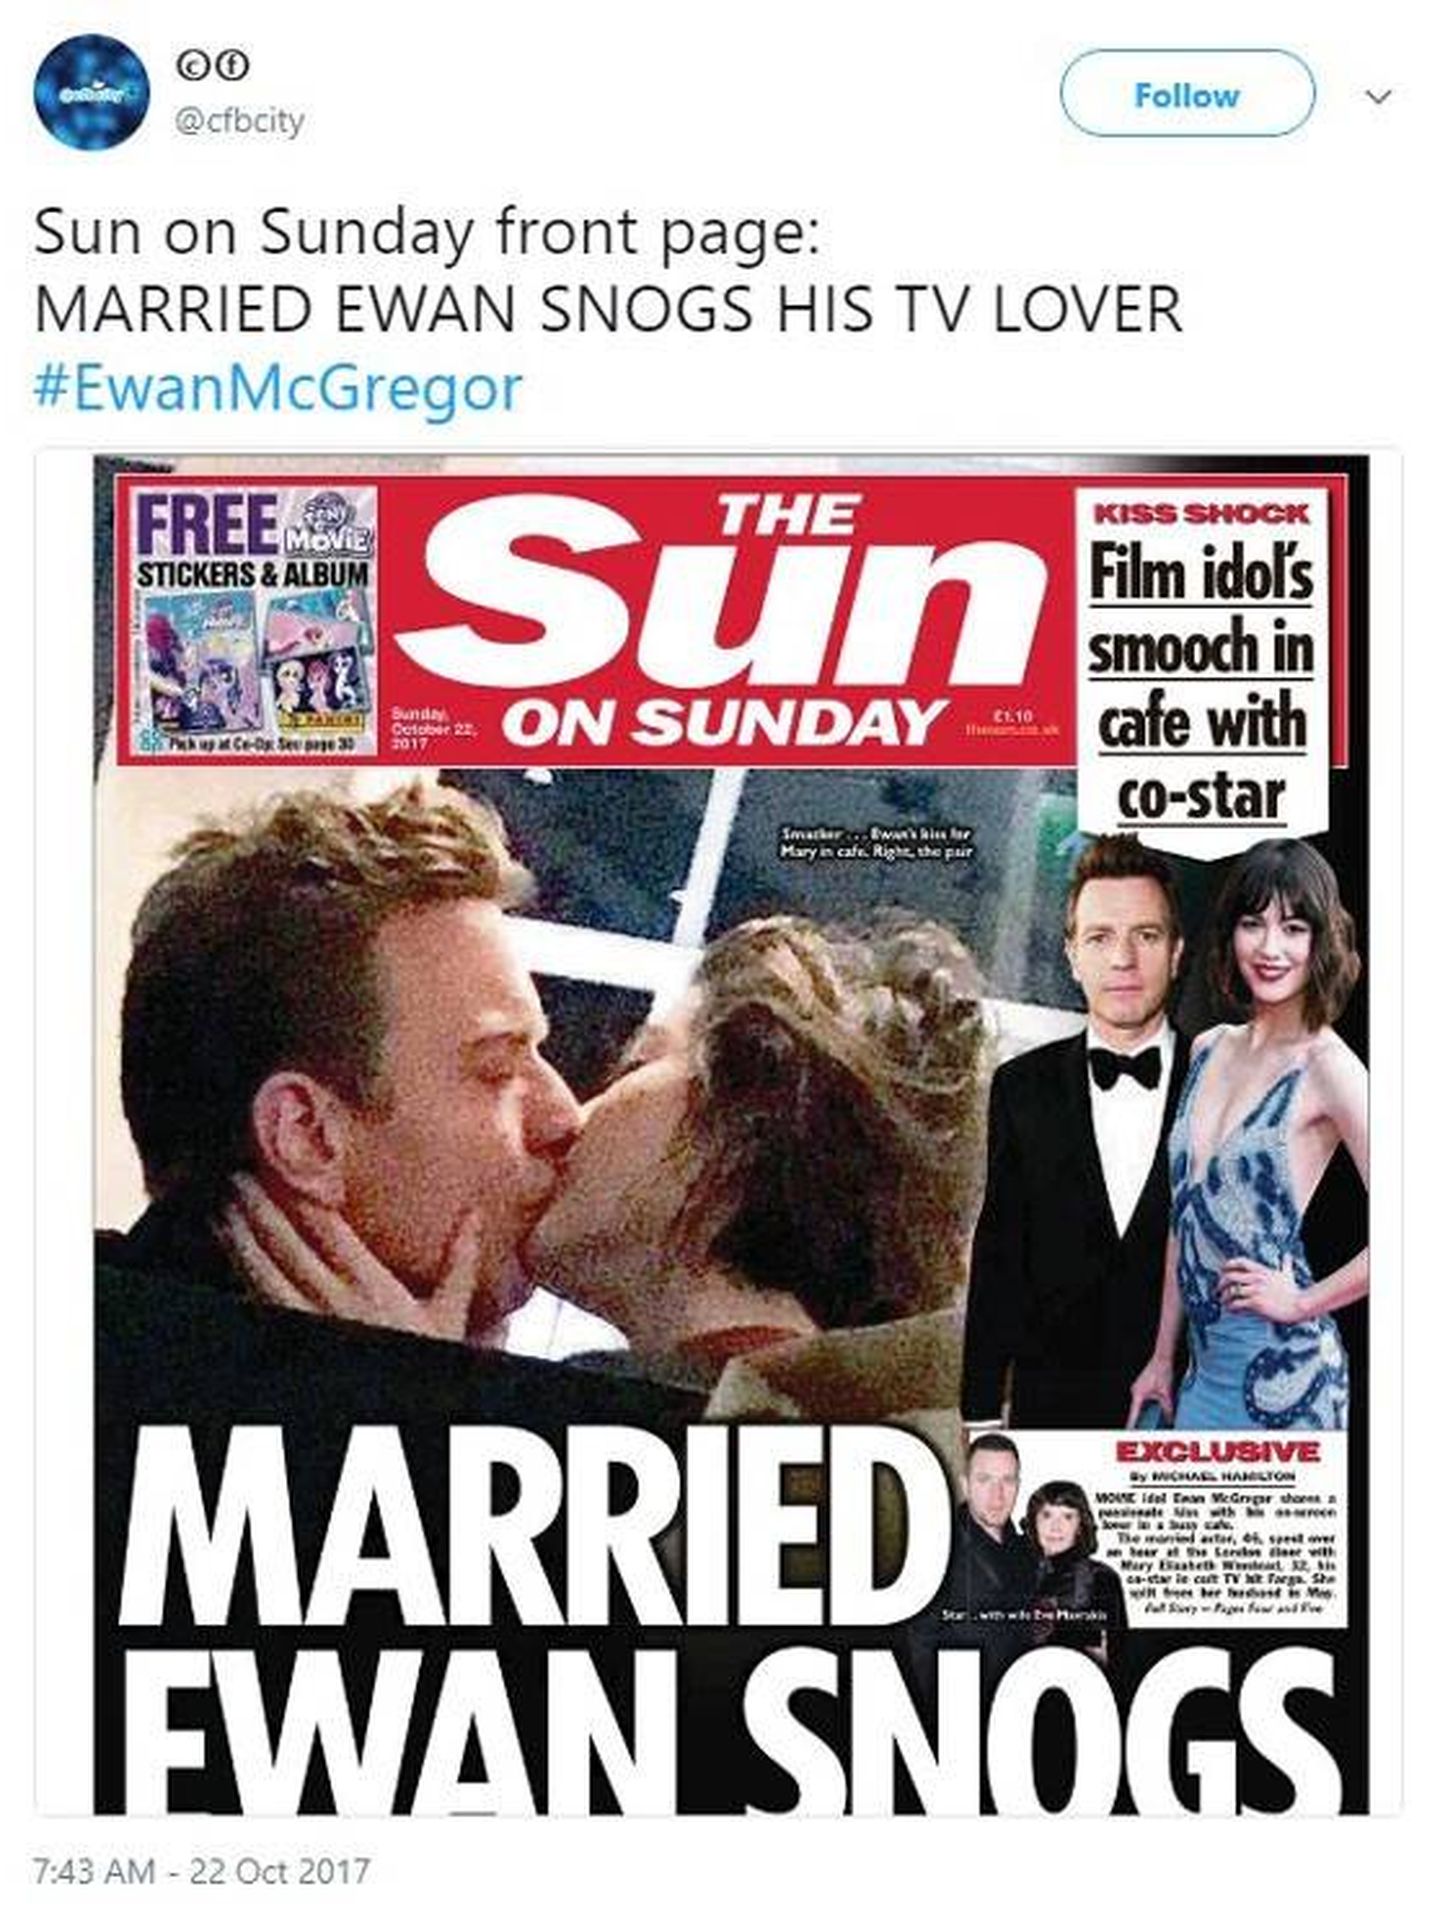 Imagen de la portada del diario 'The Sun' con Ewan McGregor.